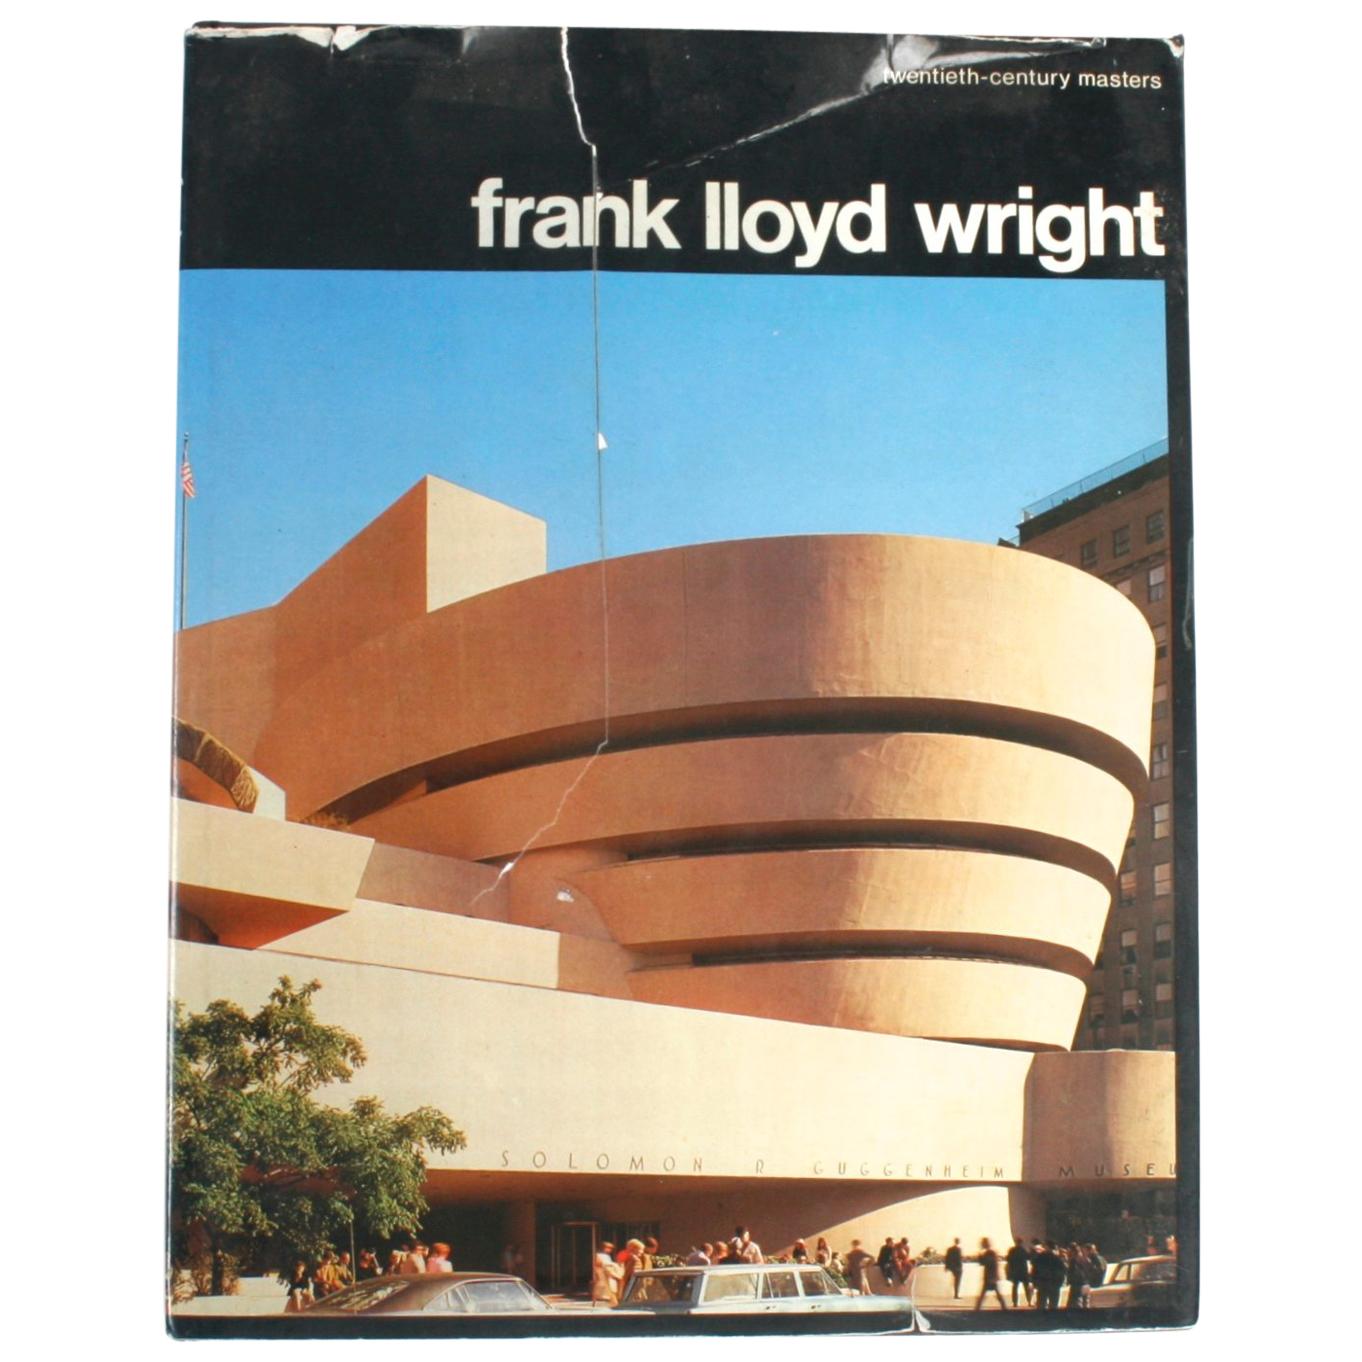 Frank Lloyd Wright by Marco Dezzi Bardeschi